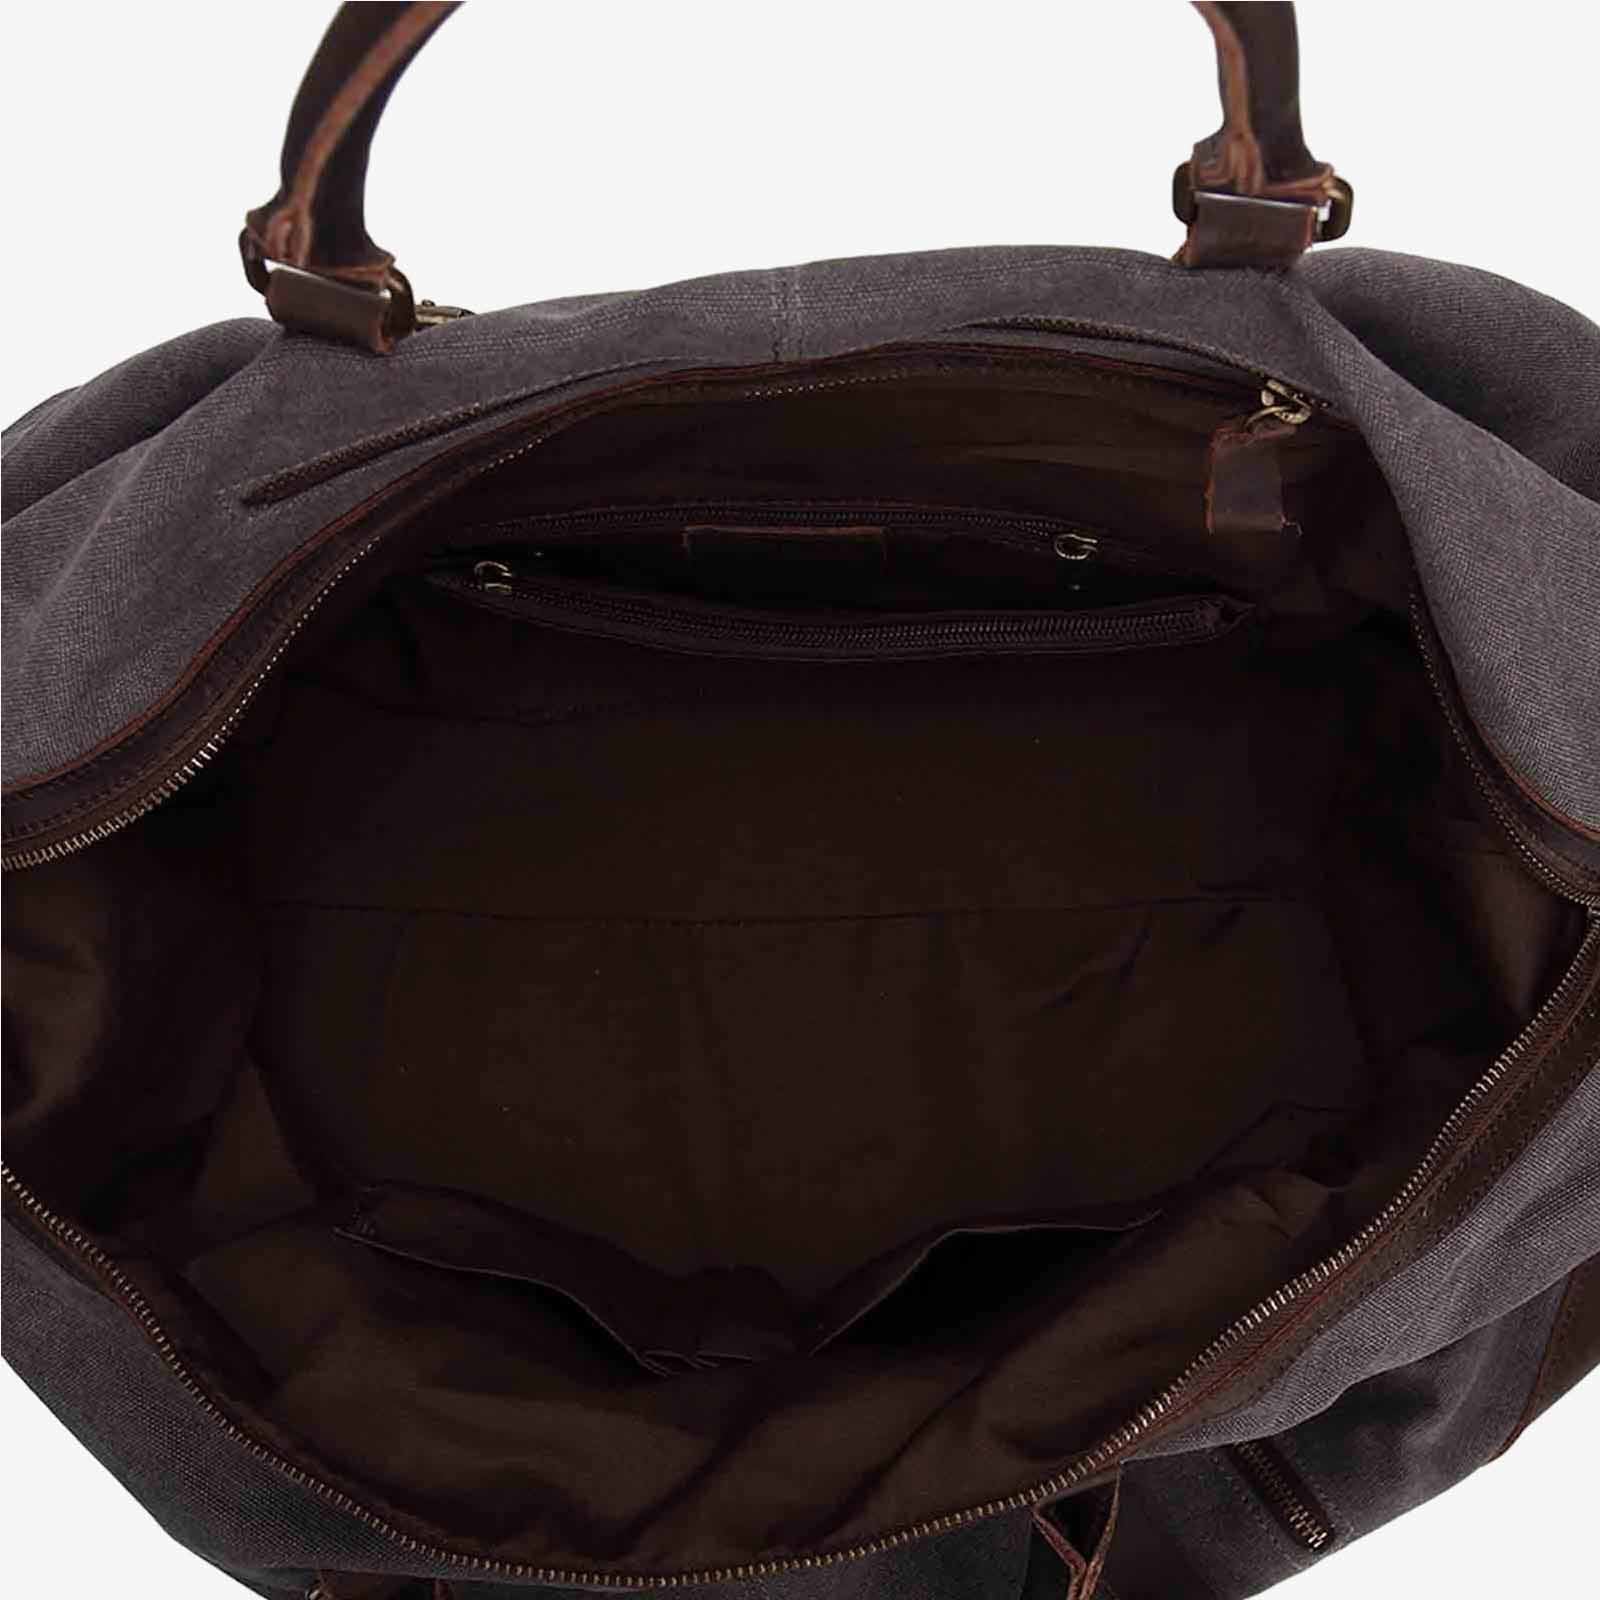 60L Canvas Weekender Duffle Bag